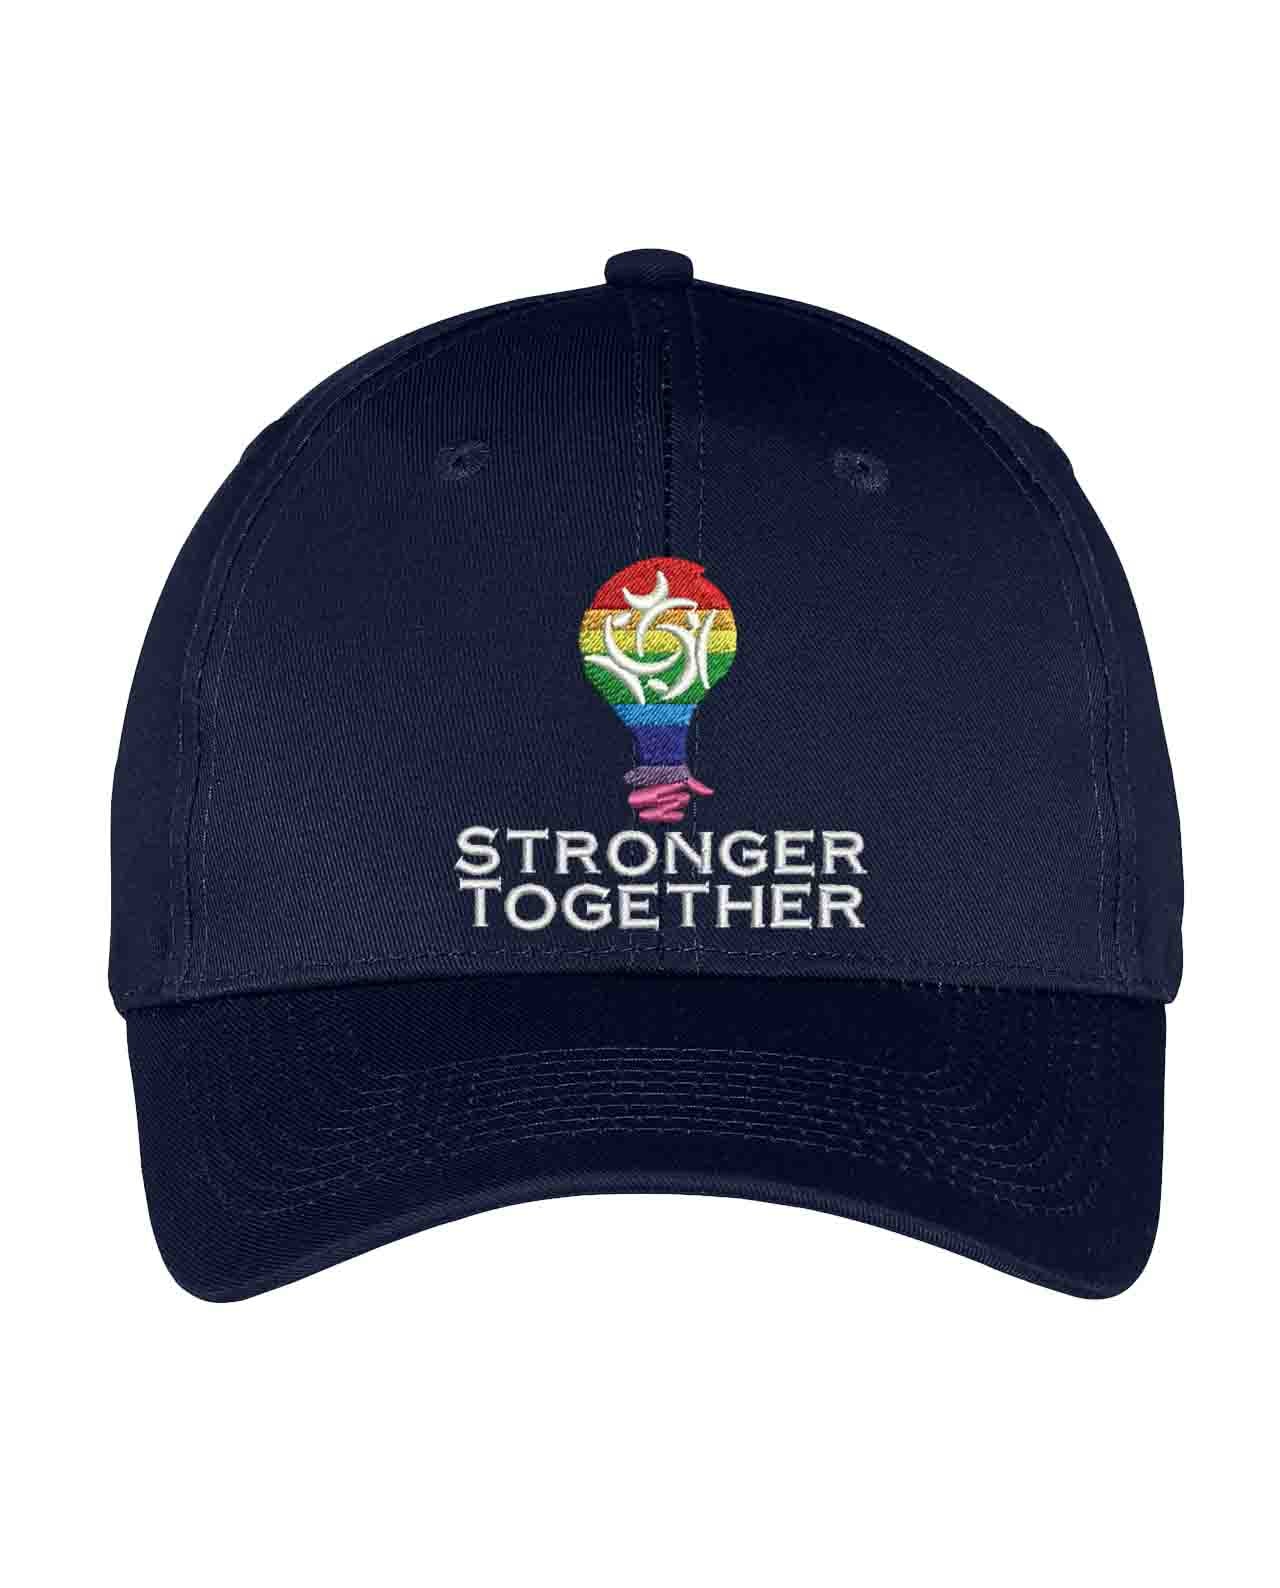 West Orange Pride Caps